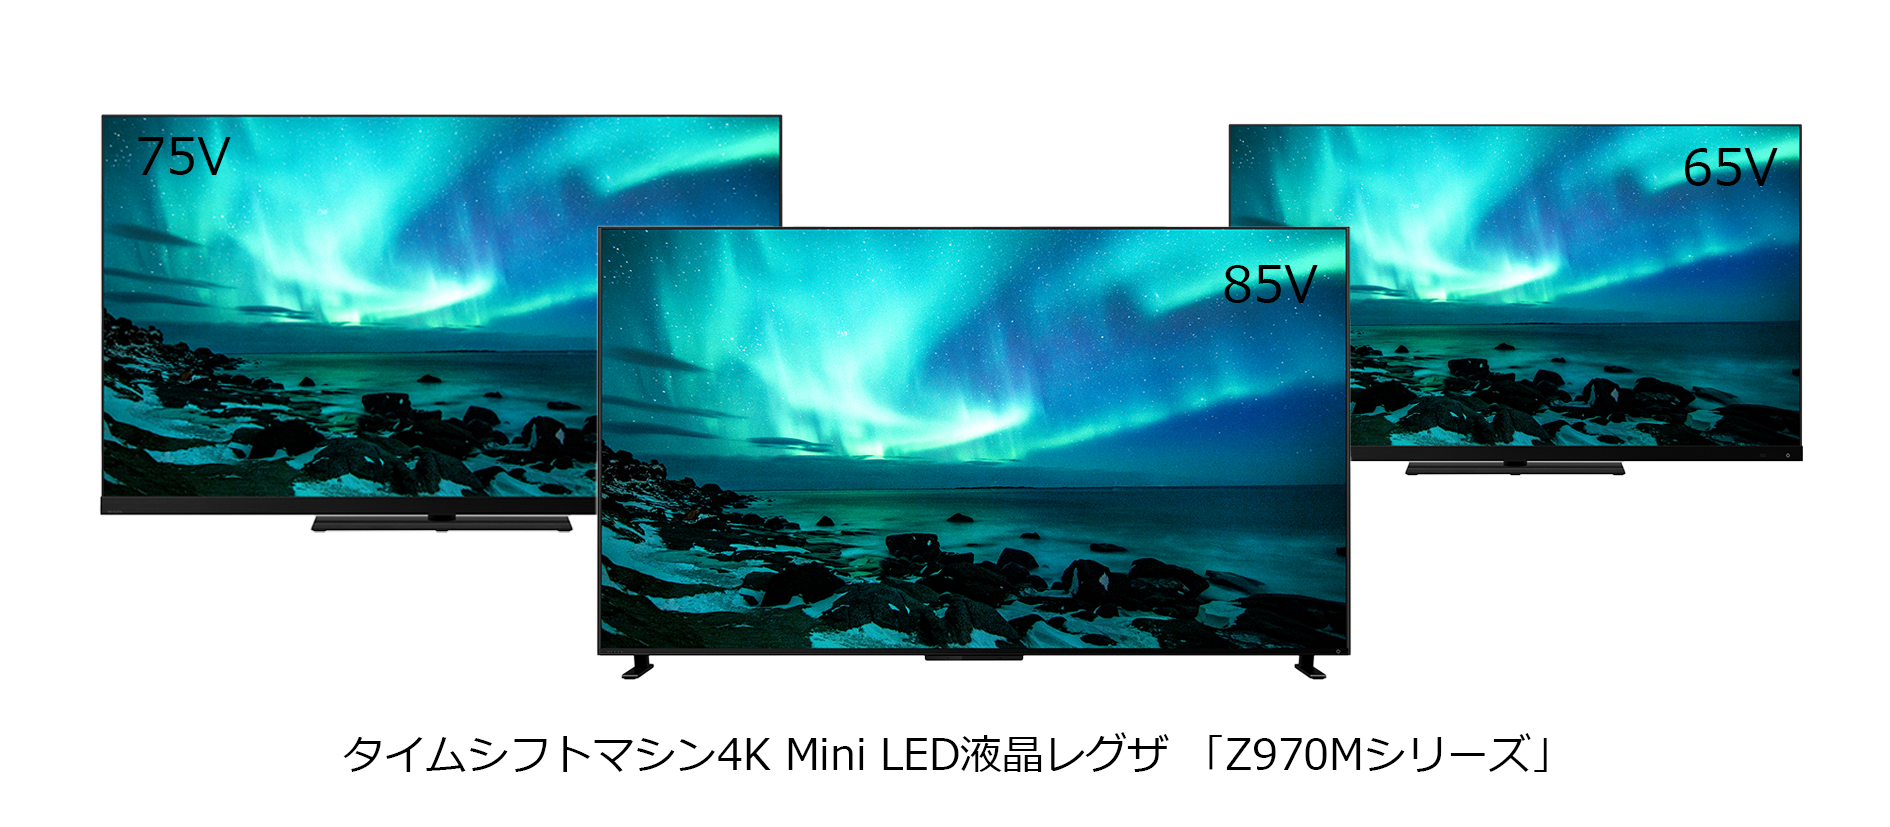 タイムシフトマシン4K Mini LED液晶レグザ「Z970Mシリーズ」発売 